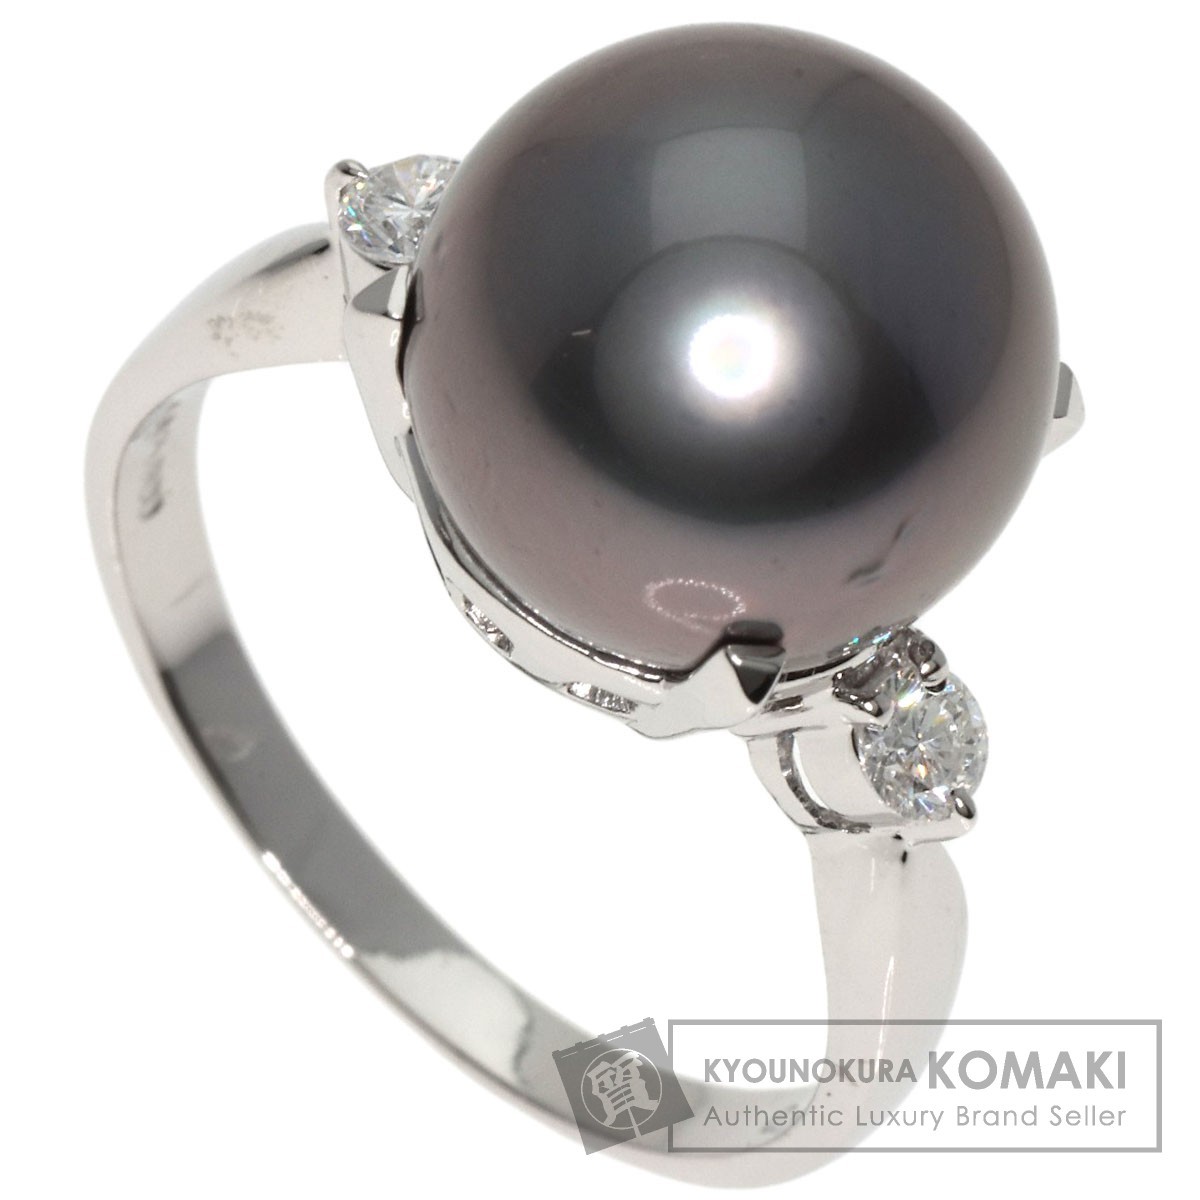 国内初の直営店 TASAKI 中古 レディース プラチナPT900 リング・指輪 ダイヤモンド 真珠 グレーパール 南洋 タサキ 指輪